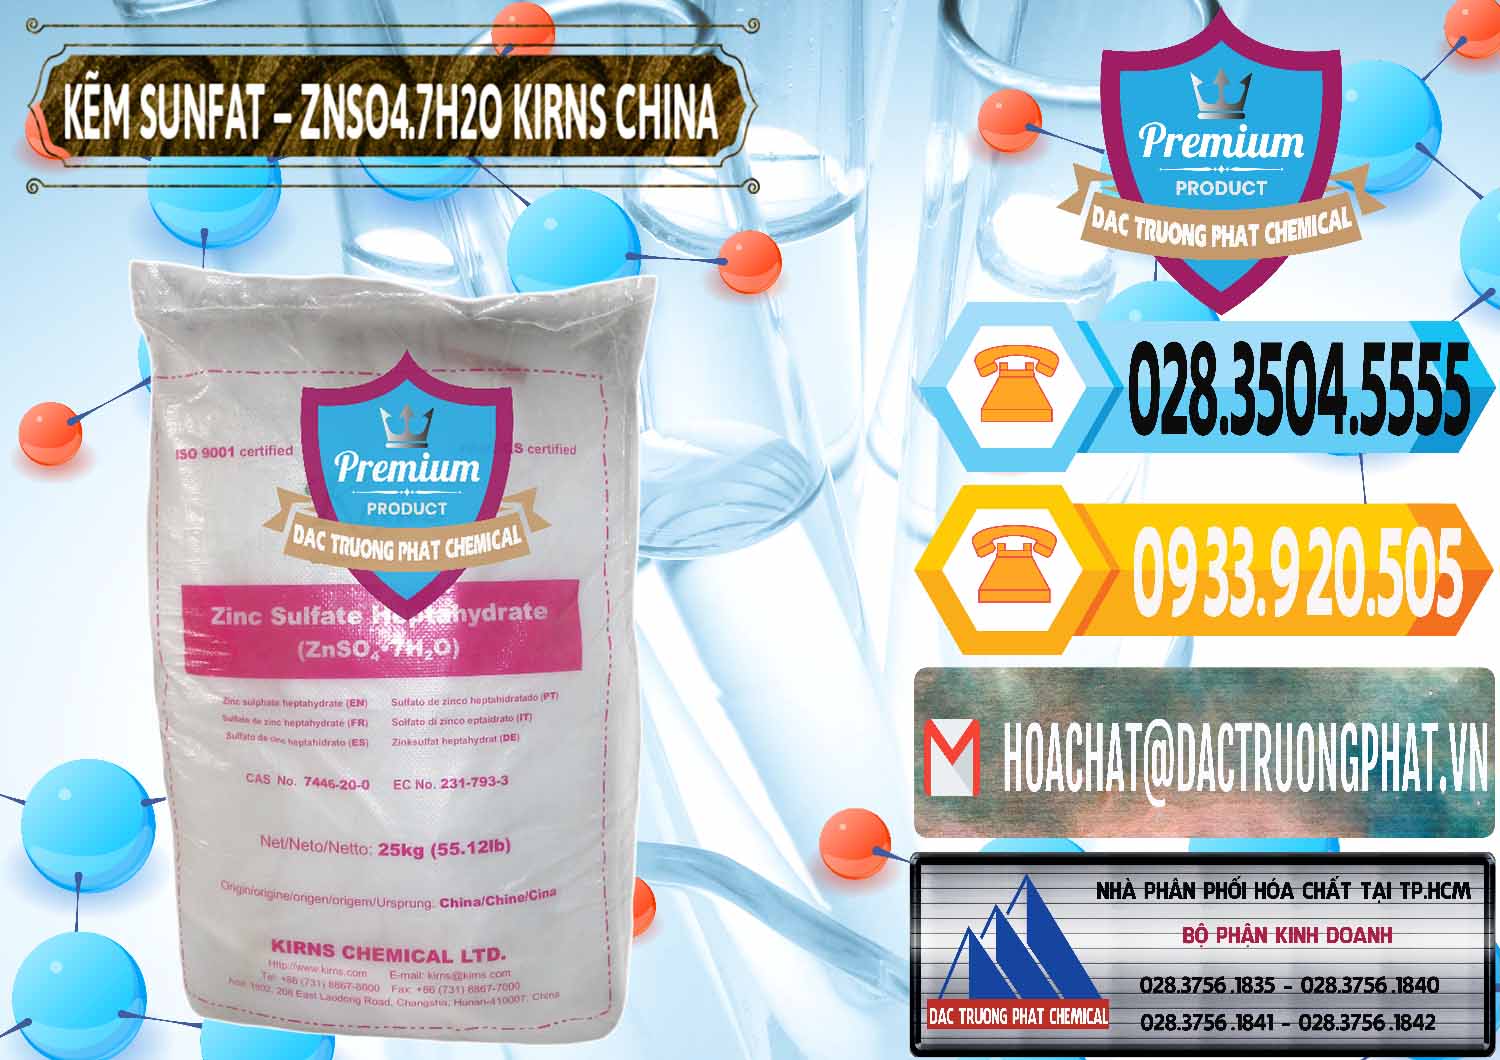 Cty bán và phân phối Kẽm Sunfat – ZNSO4.7H2O Kirns Trung Quốc China - 0089 - Chuyên phân phối và cung ứng hóa chất tại TP.HCM - hoachattayrua.net